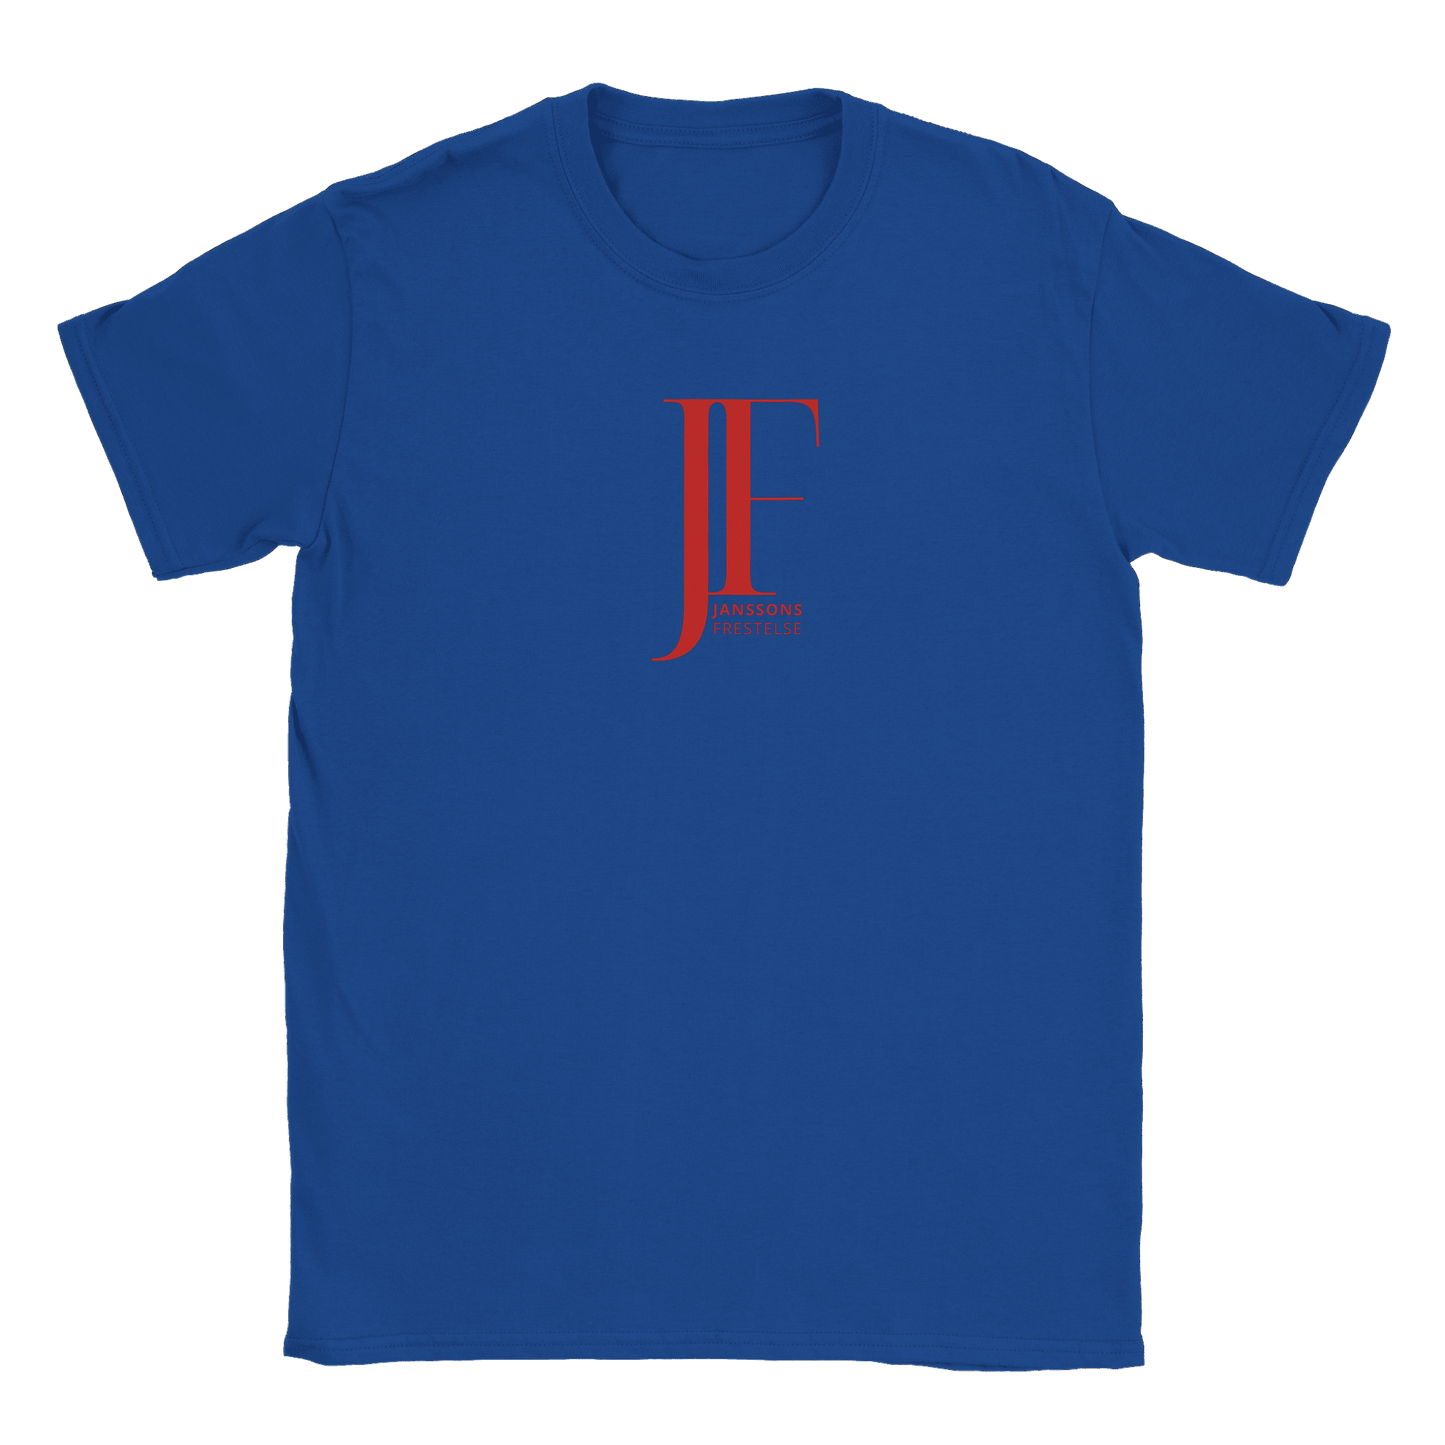 Janssons Frestelse - T-shirt Royal